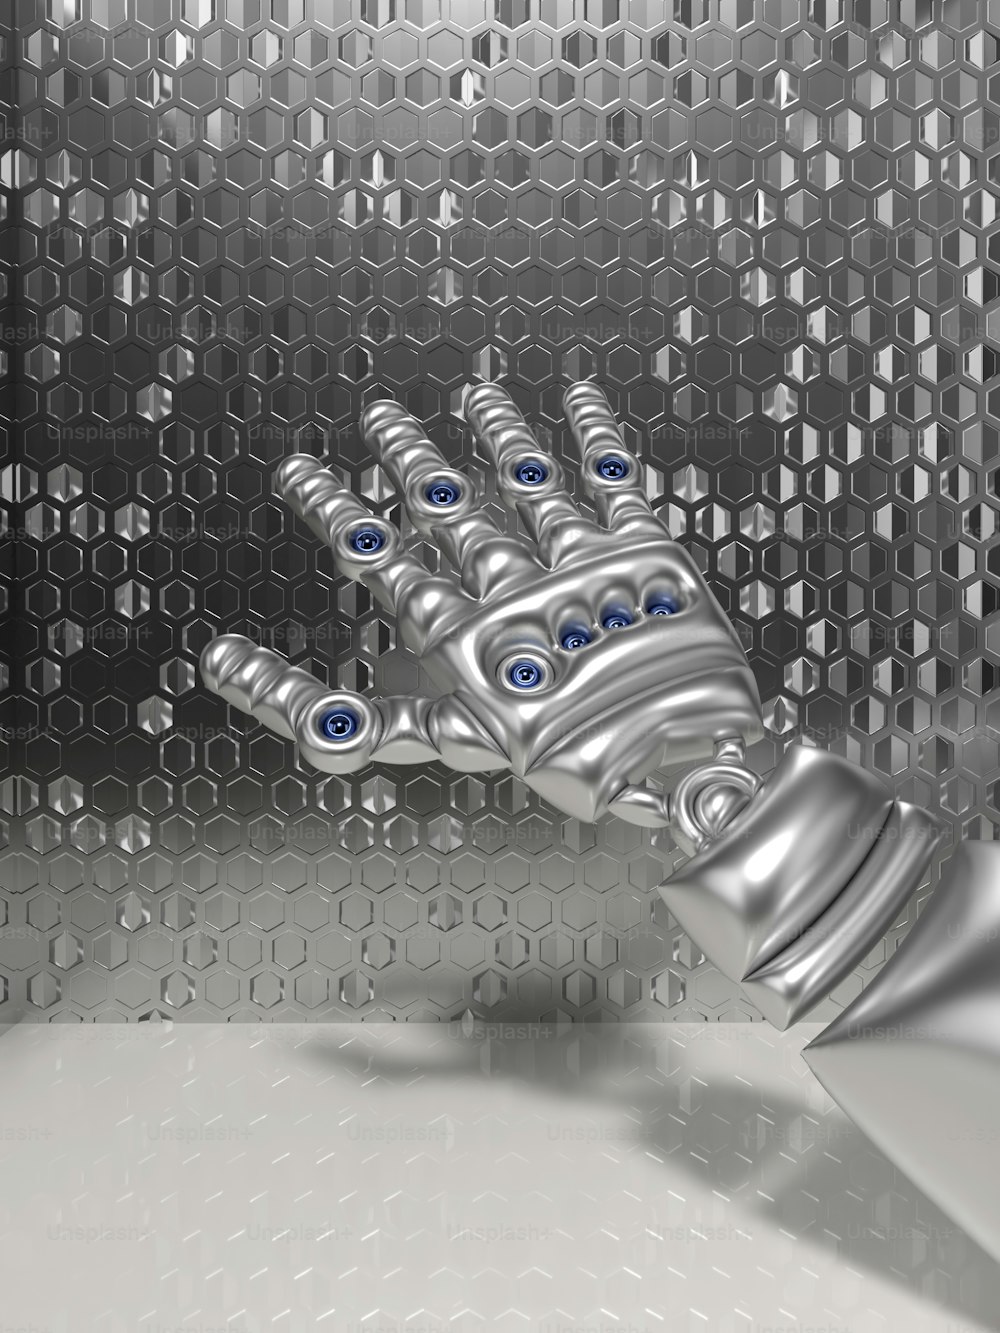 Une main de robot aux yeux bleus est montrée devant un fond métallique